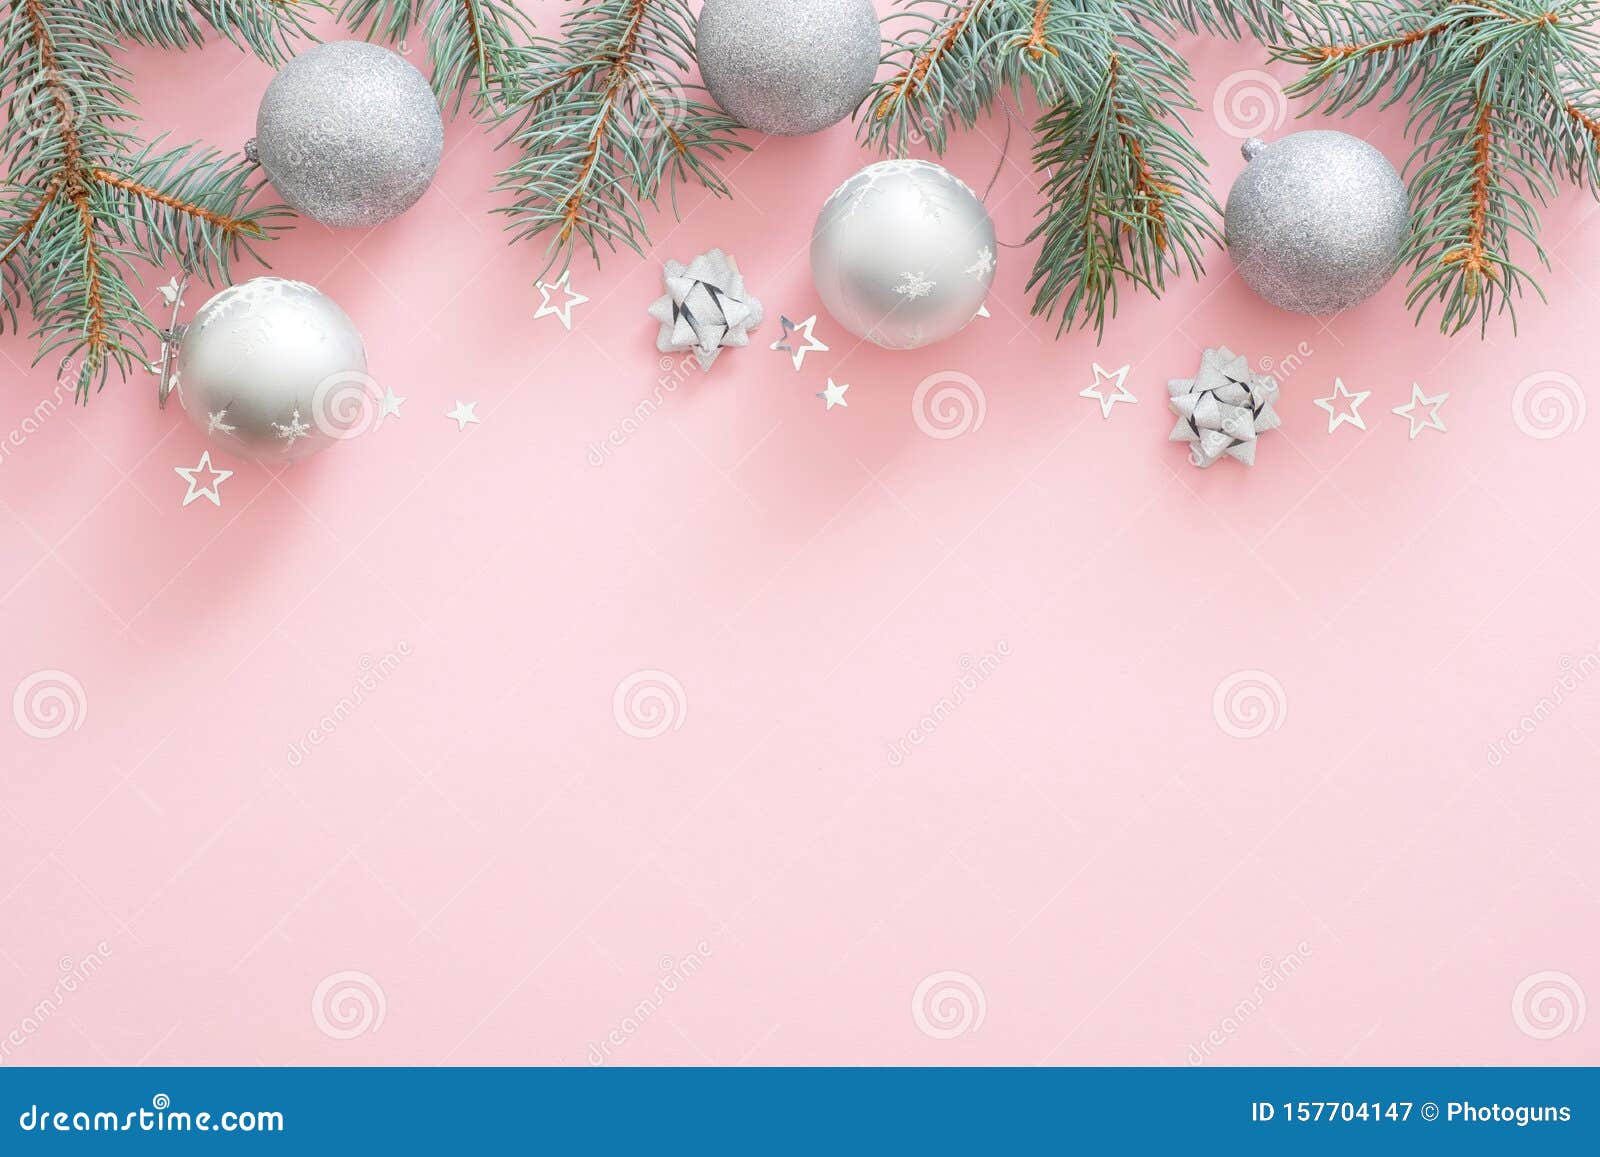 Nền đồ hoạ Giáng sinh hồng nhẹ nhàng và dịu dàng mang đến không khí lễ hội ấm áp đầy màu sắc. Đây là thời điểm để tất cả chúng ta kết nối và chia sẻ niềm vui cùng nhau. Hãy vào xem hình ảnh để tận hưởng không gian noel hồng tươi tắn ấy.